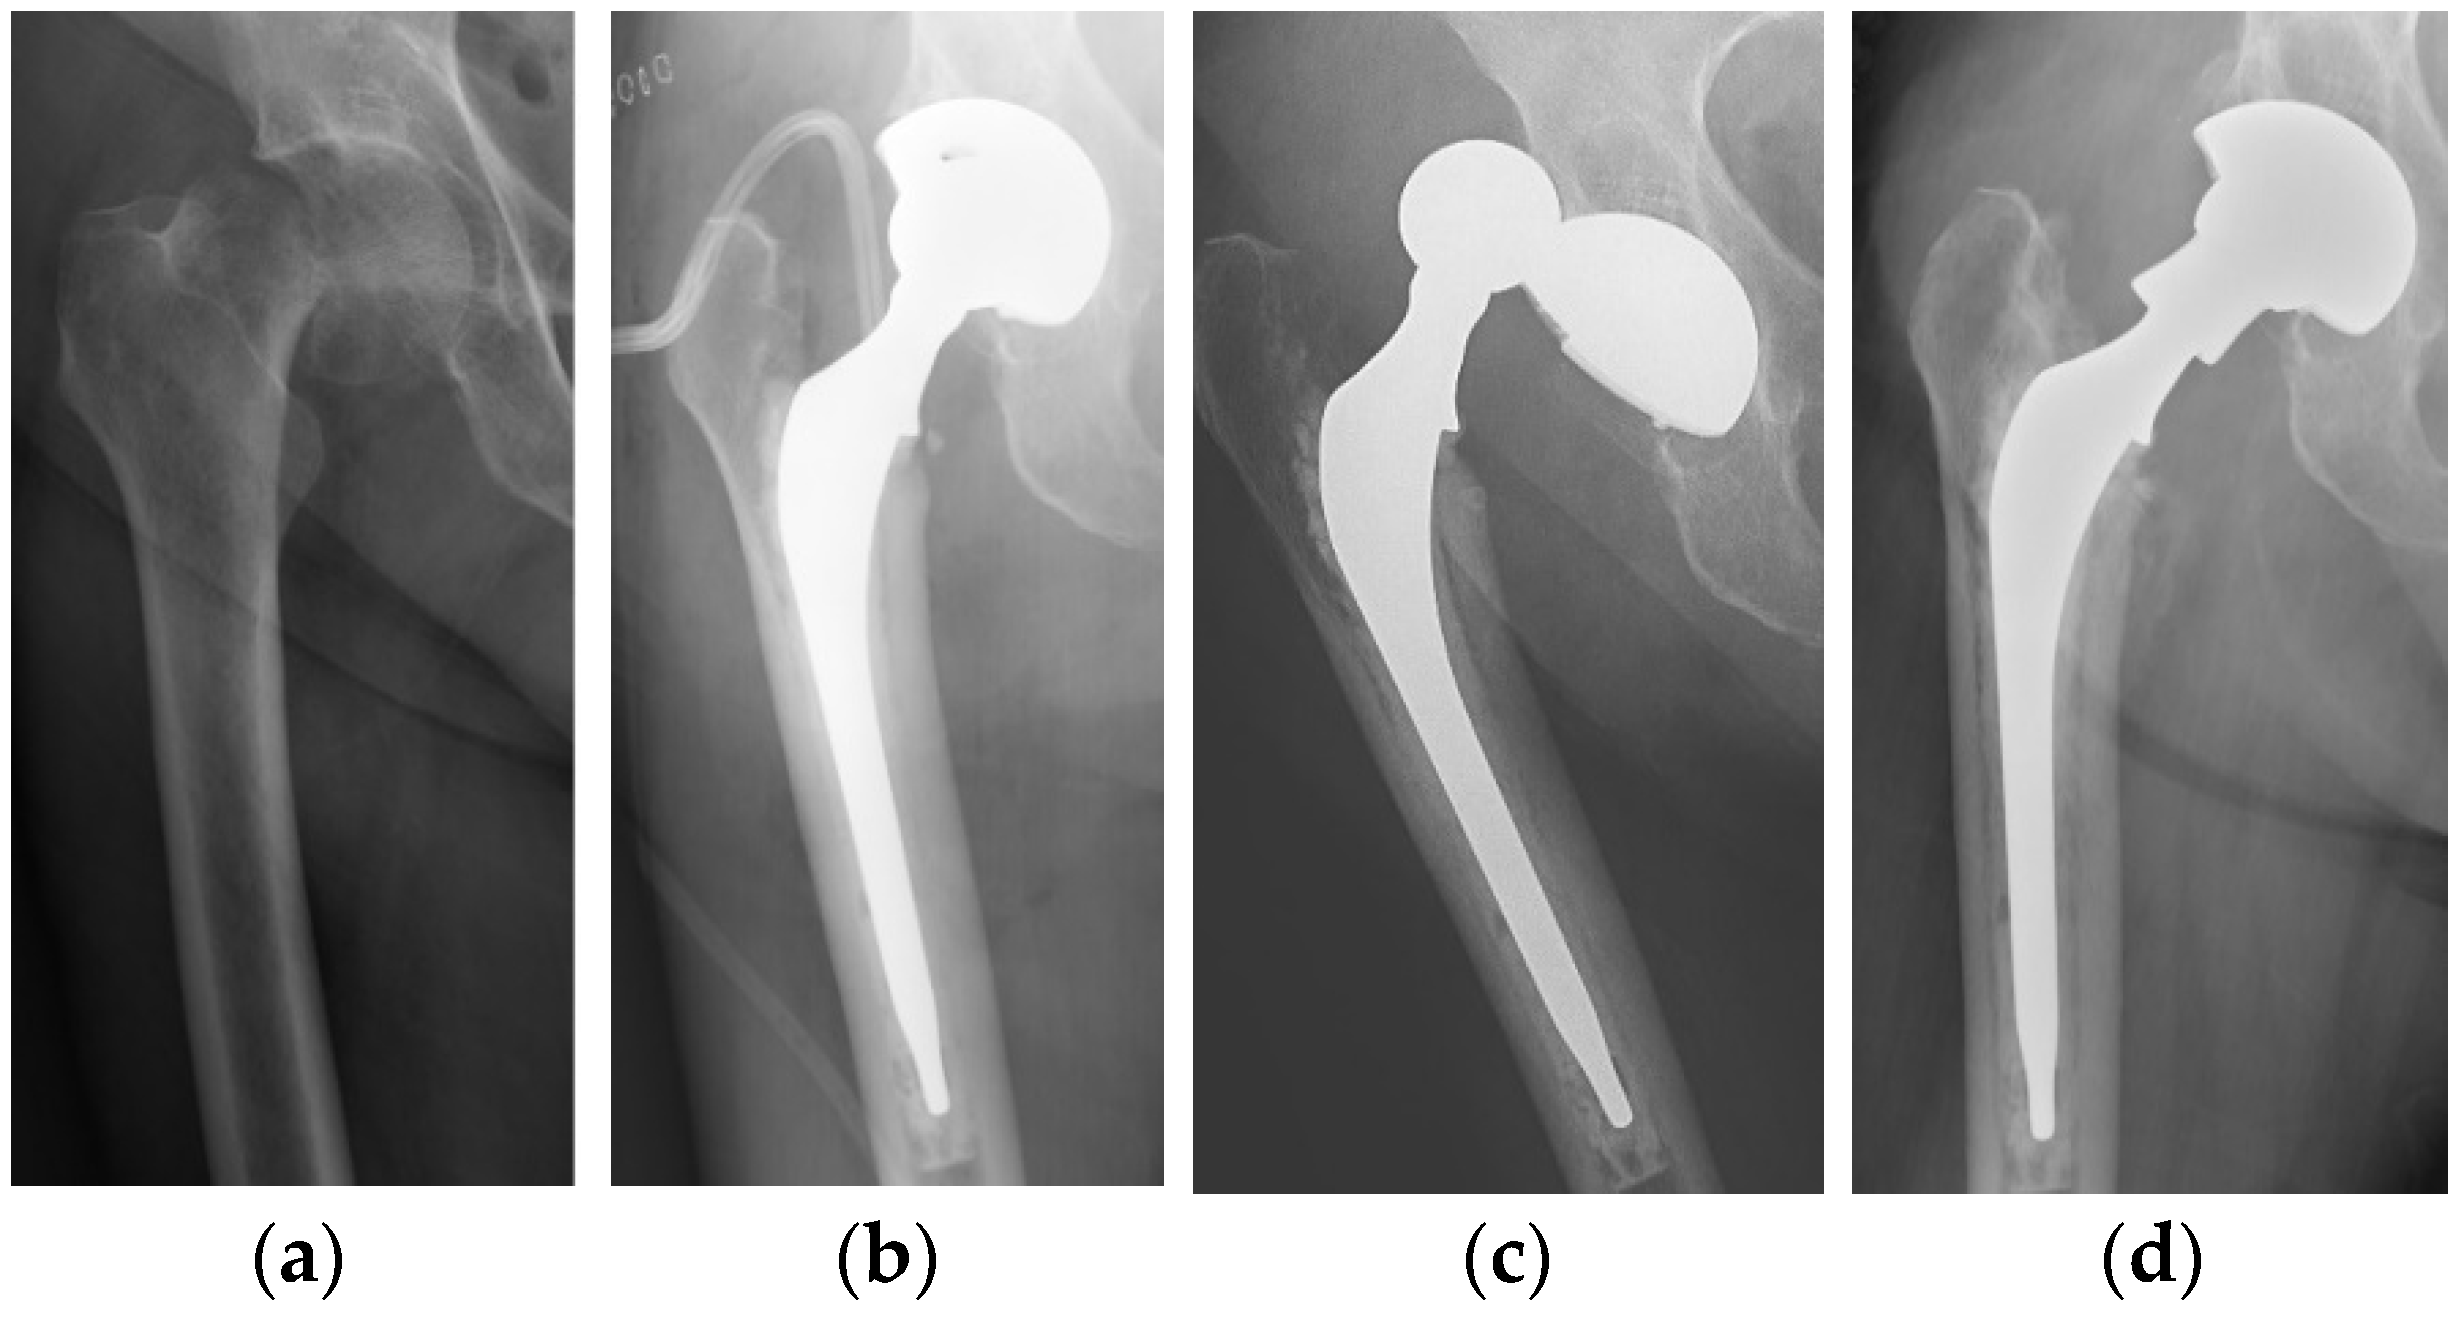 total hip vs hemiarthroplasty femoral neck fracture